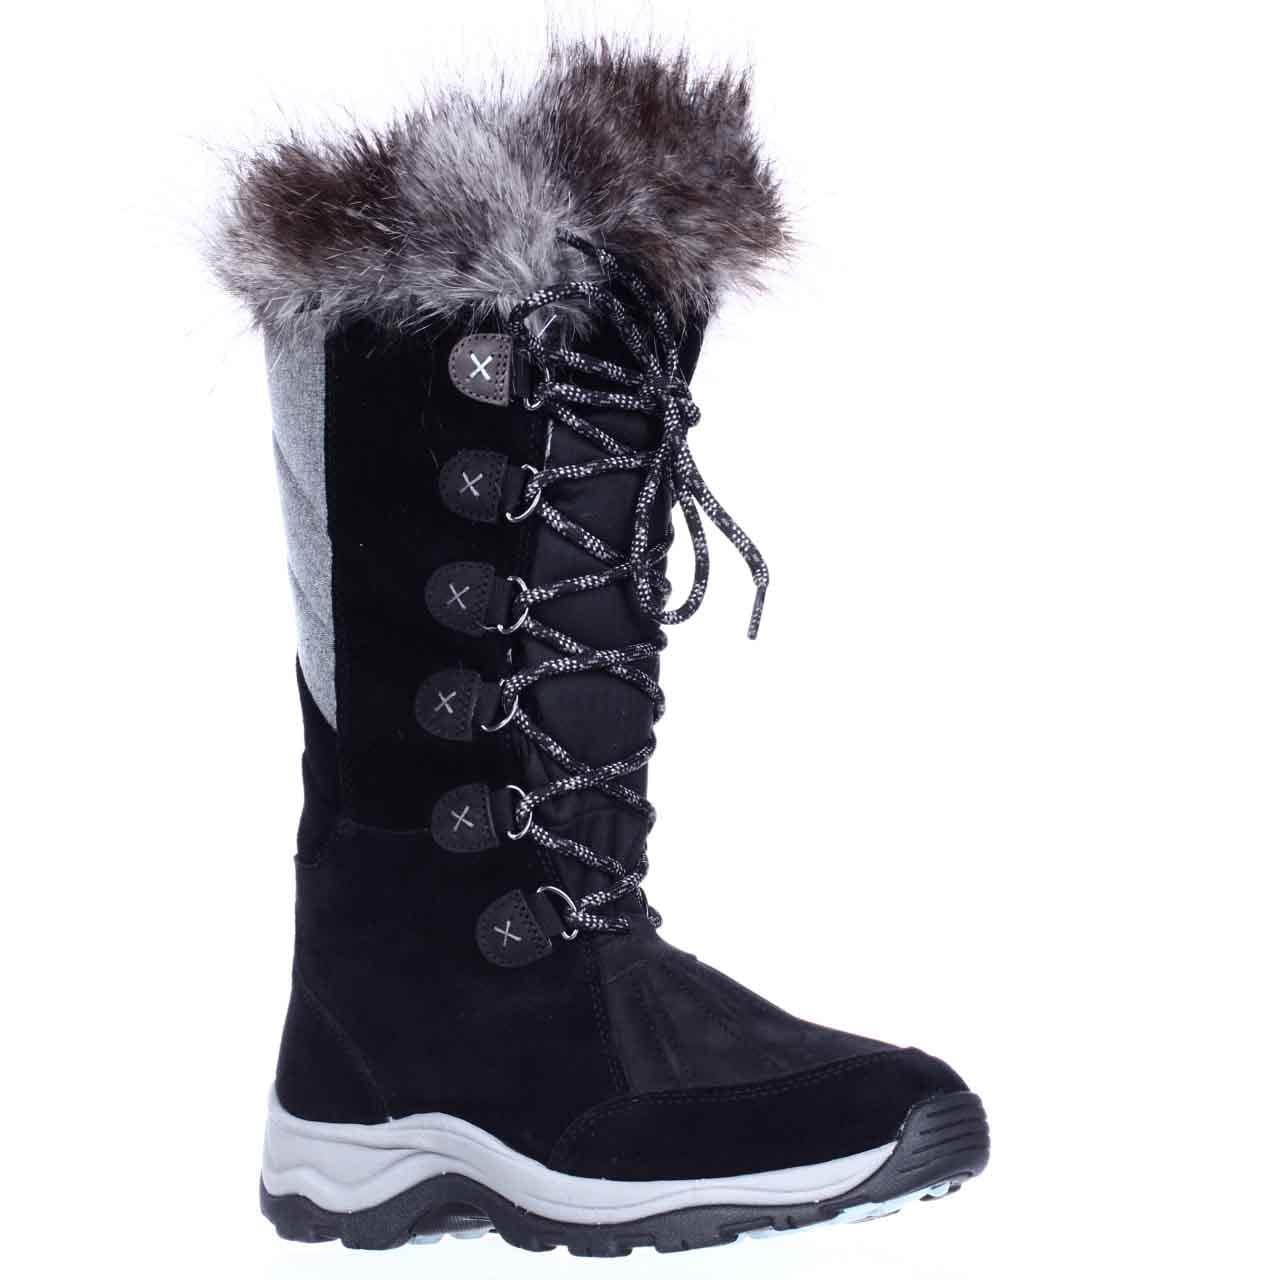 Clarks Wintry Hi Waterproof FLeece Lined Lace Up Winter Boots - Black -